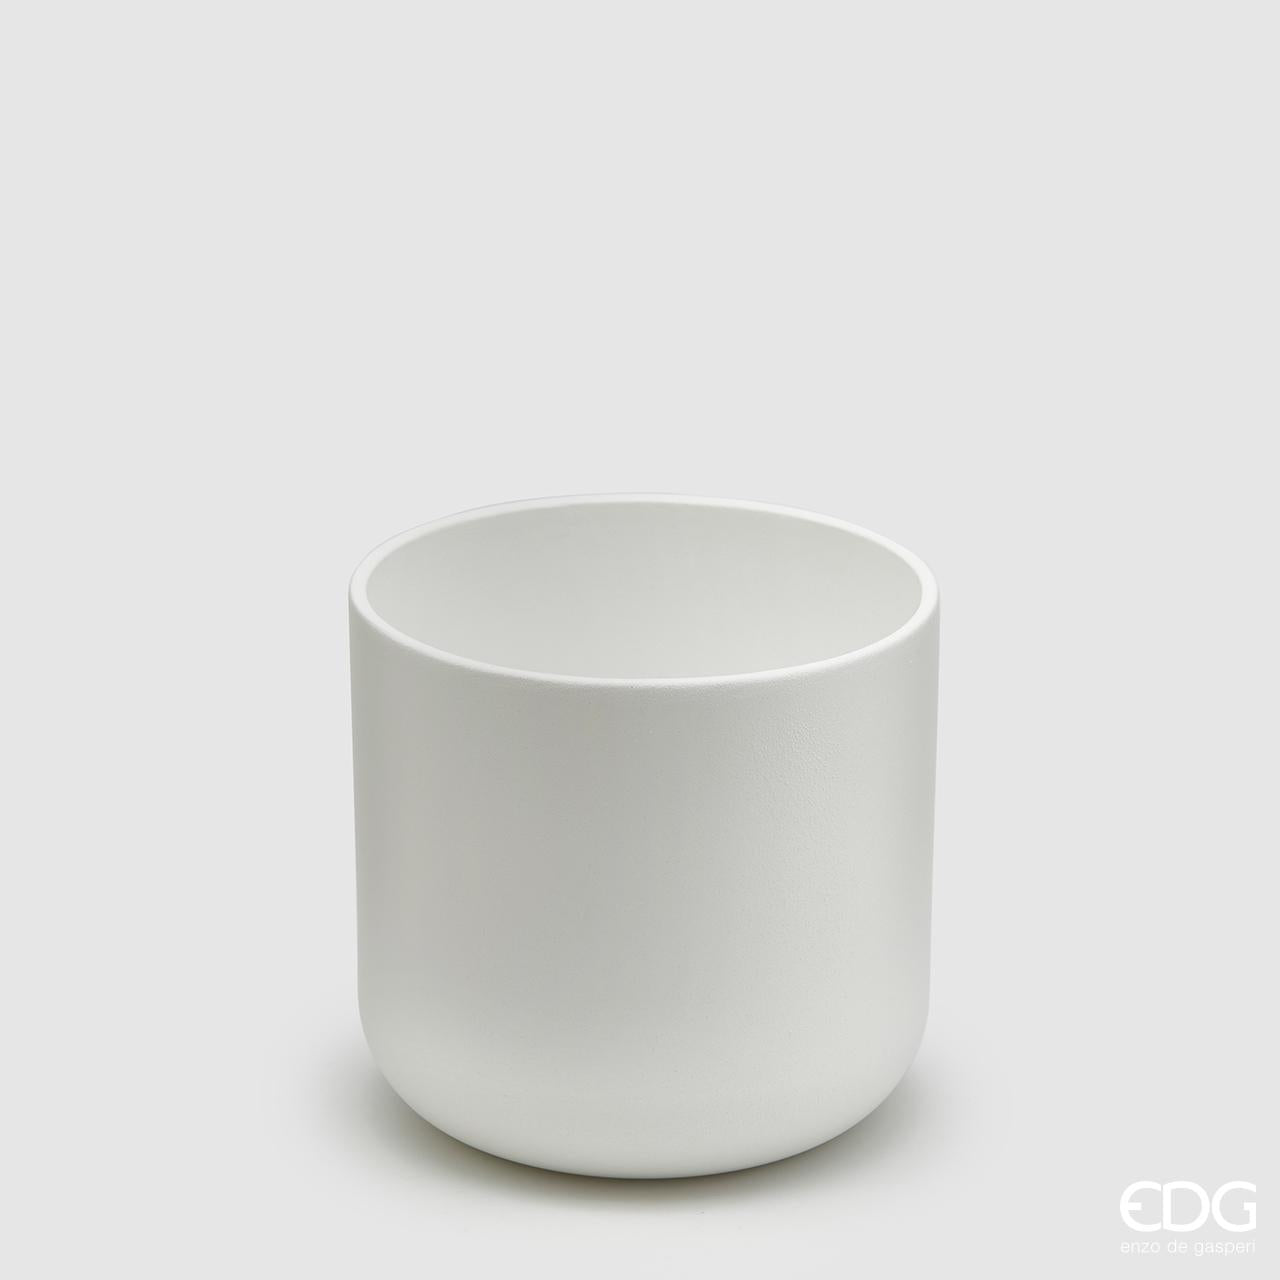 Vaso in ceramica di colore bianco. Dimensioni: cm 13,5 x 13 h. Selezione di prodotti EDG in negozio e online su tutttochic.it